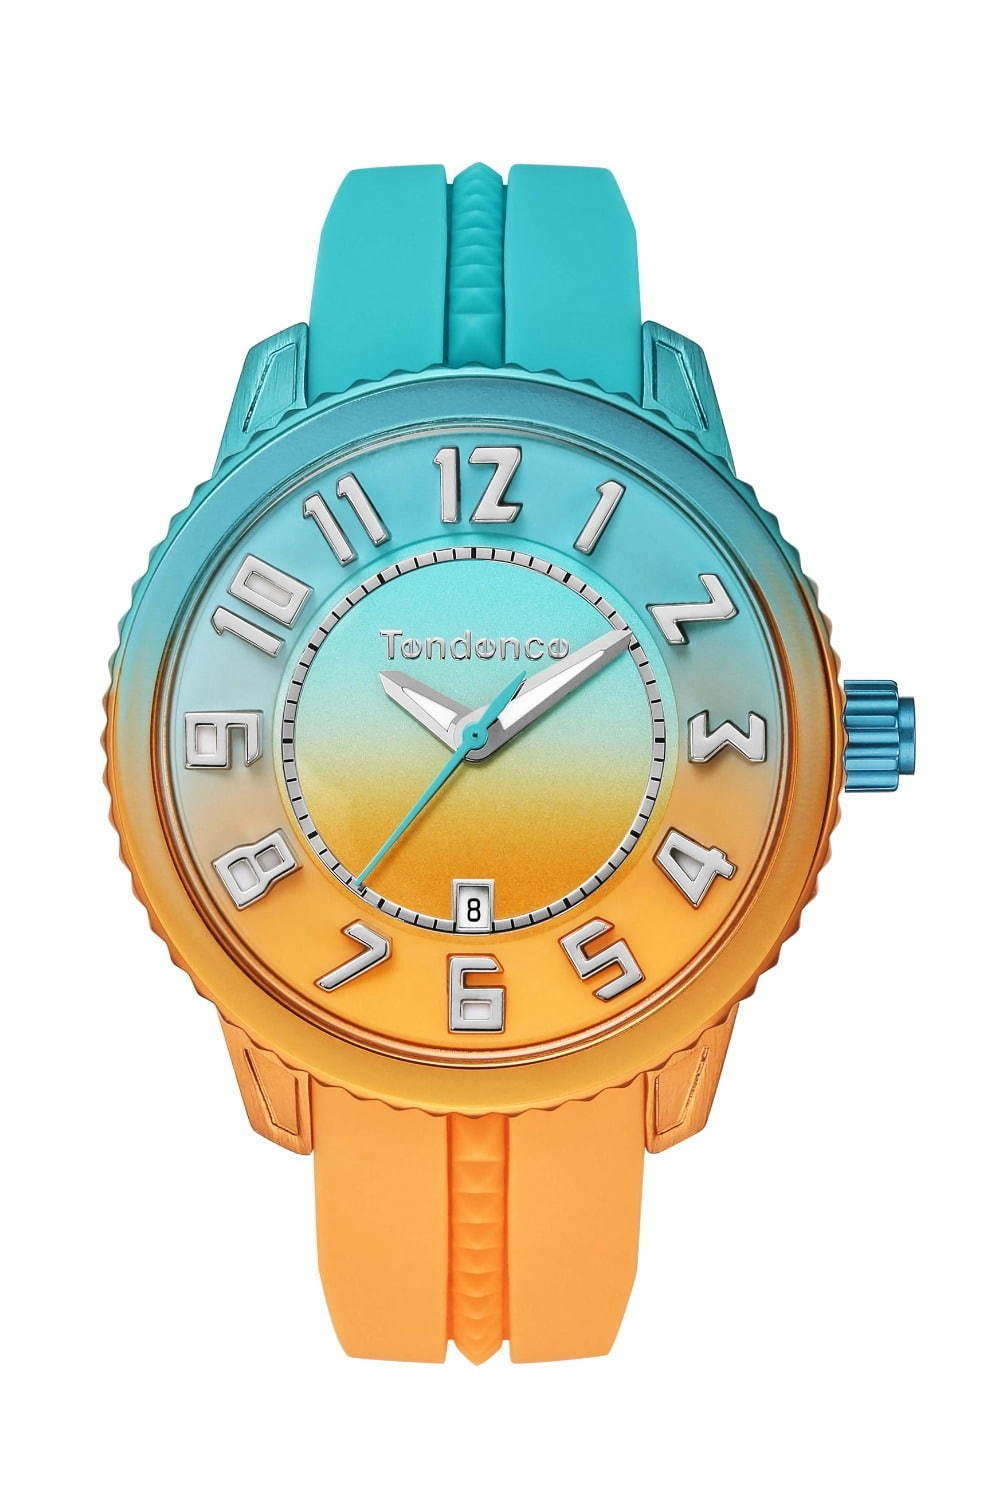 テンデンス、グラデーションカラーのカラフル腕時計